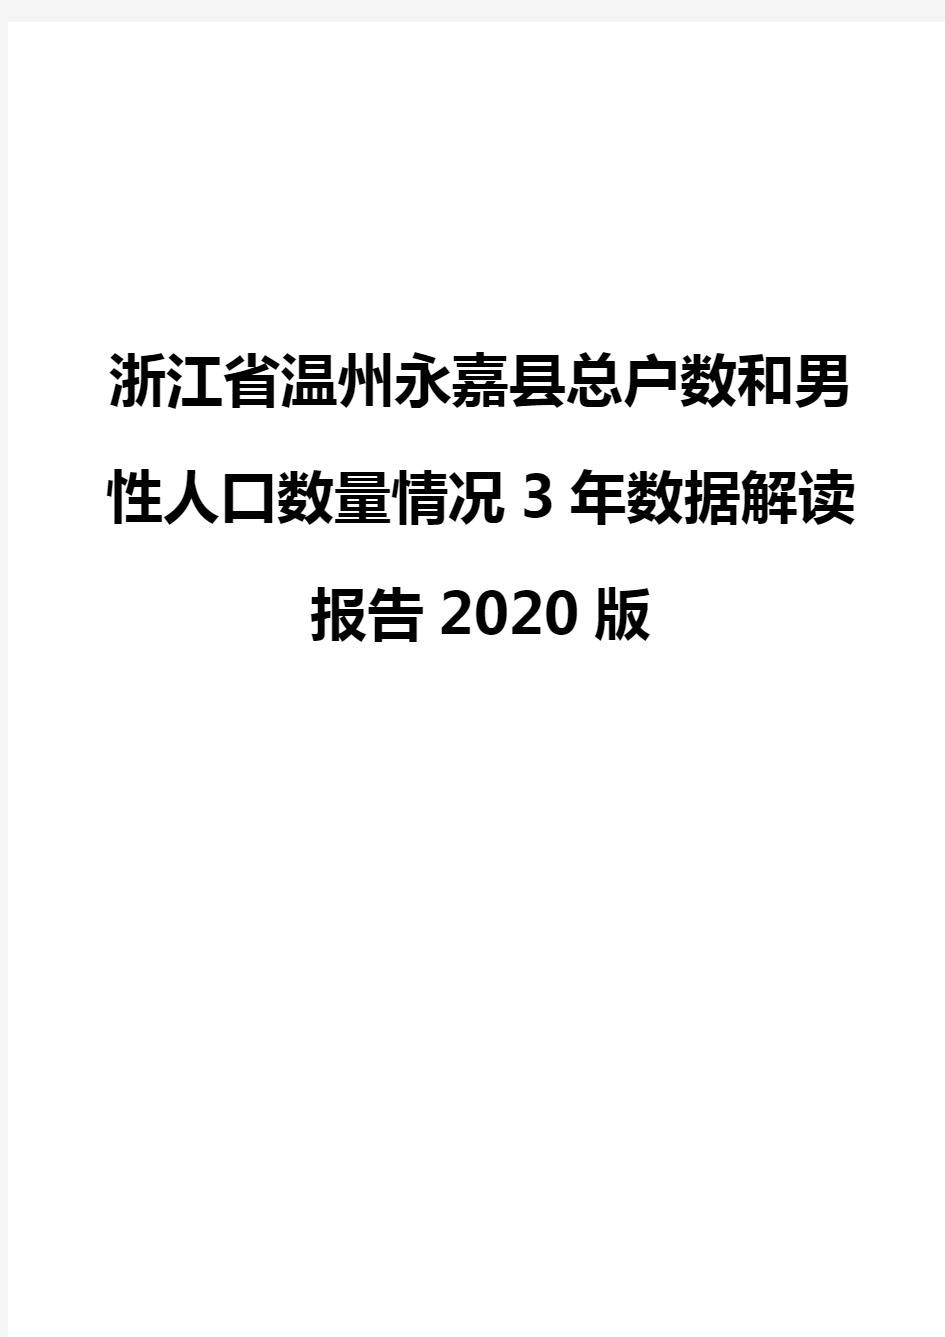 浙江省温州永嘉县总户数和男性人口数量情况3年数据解读报告2020版